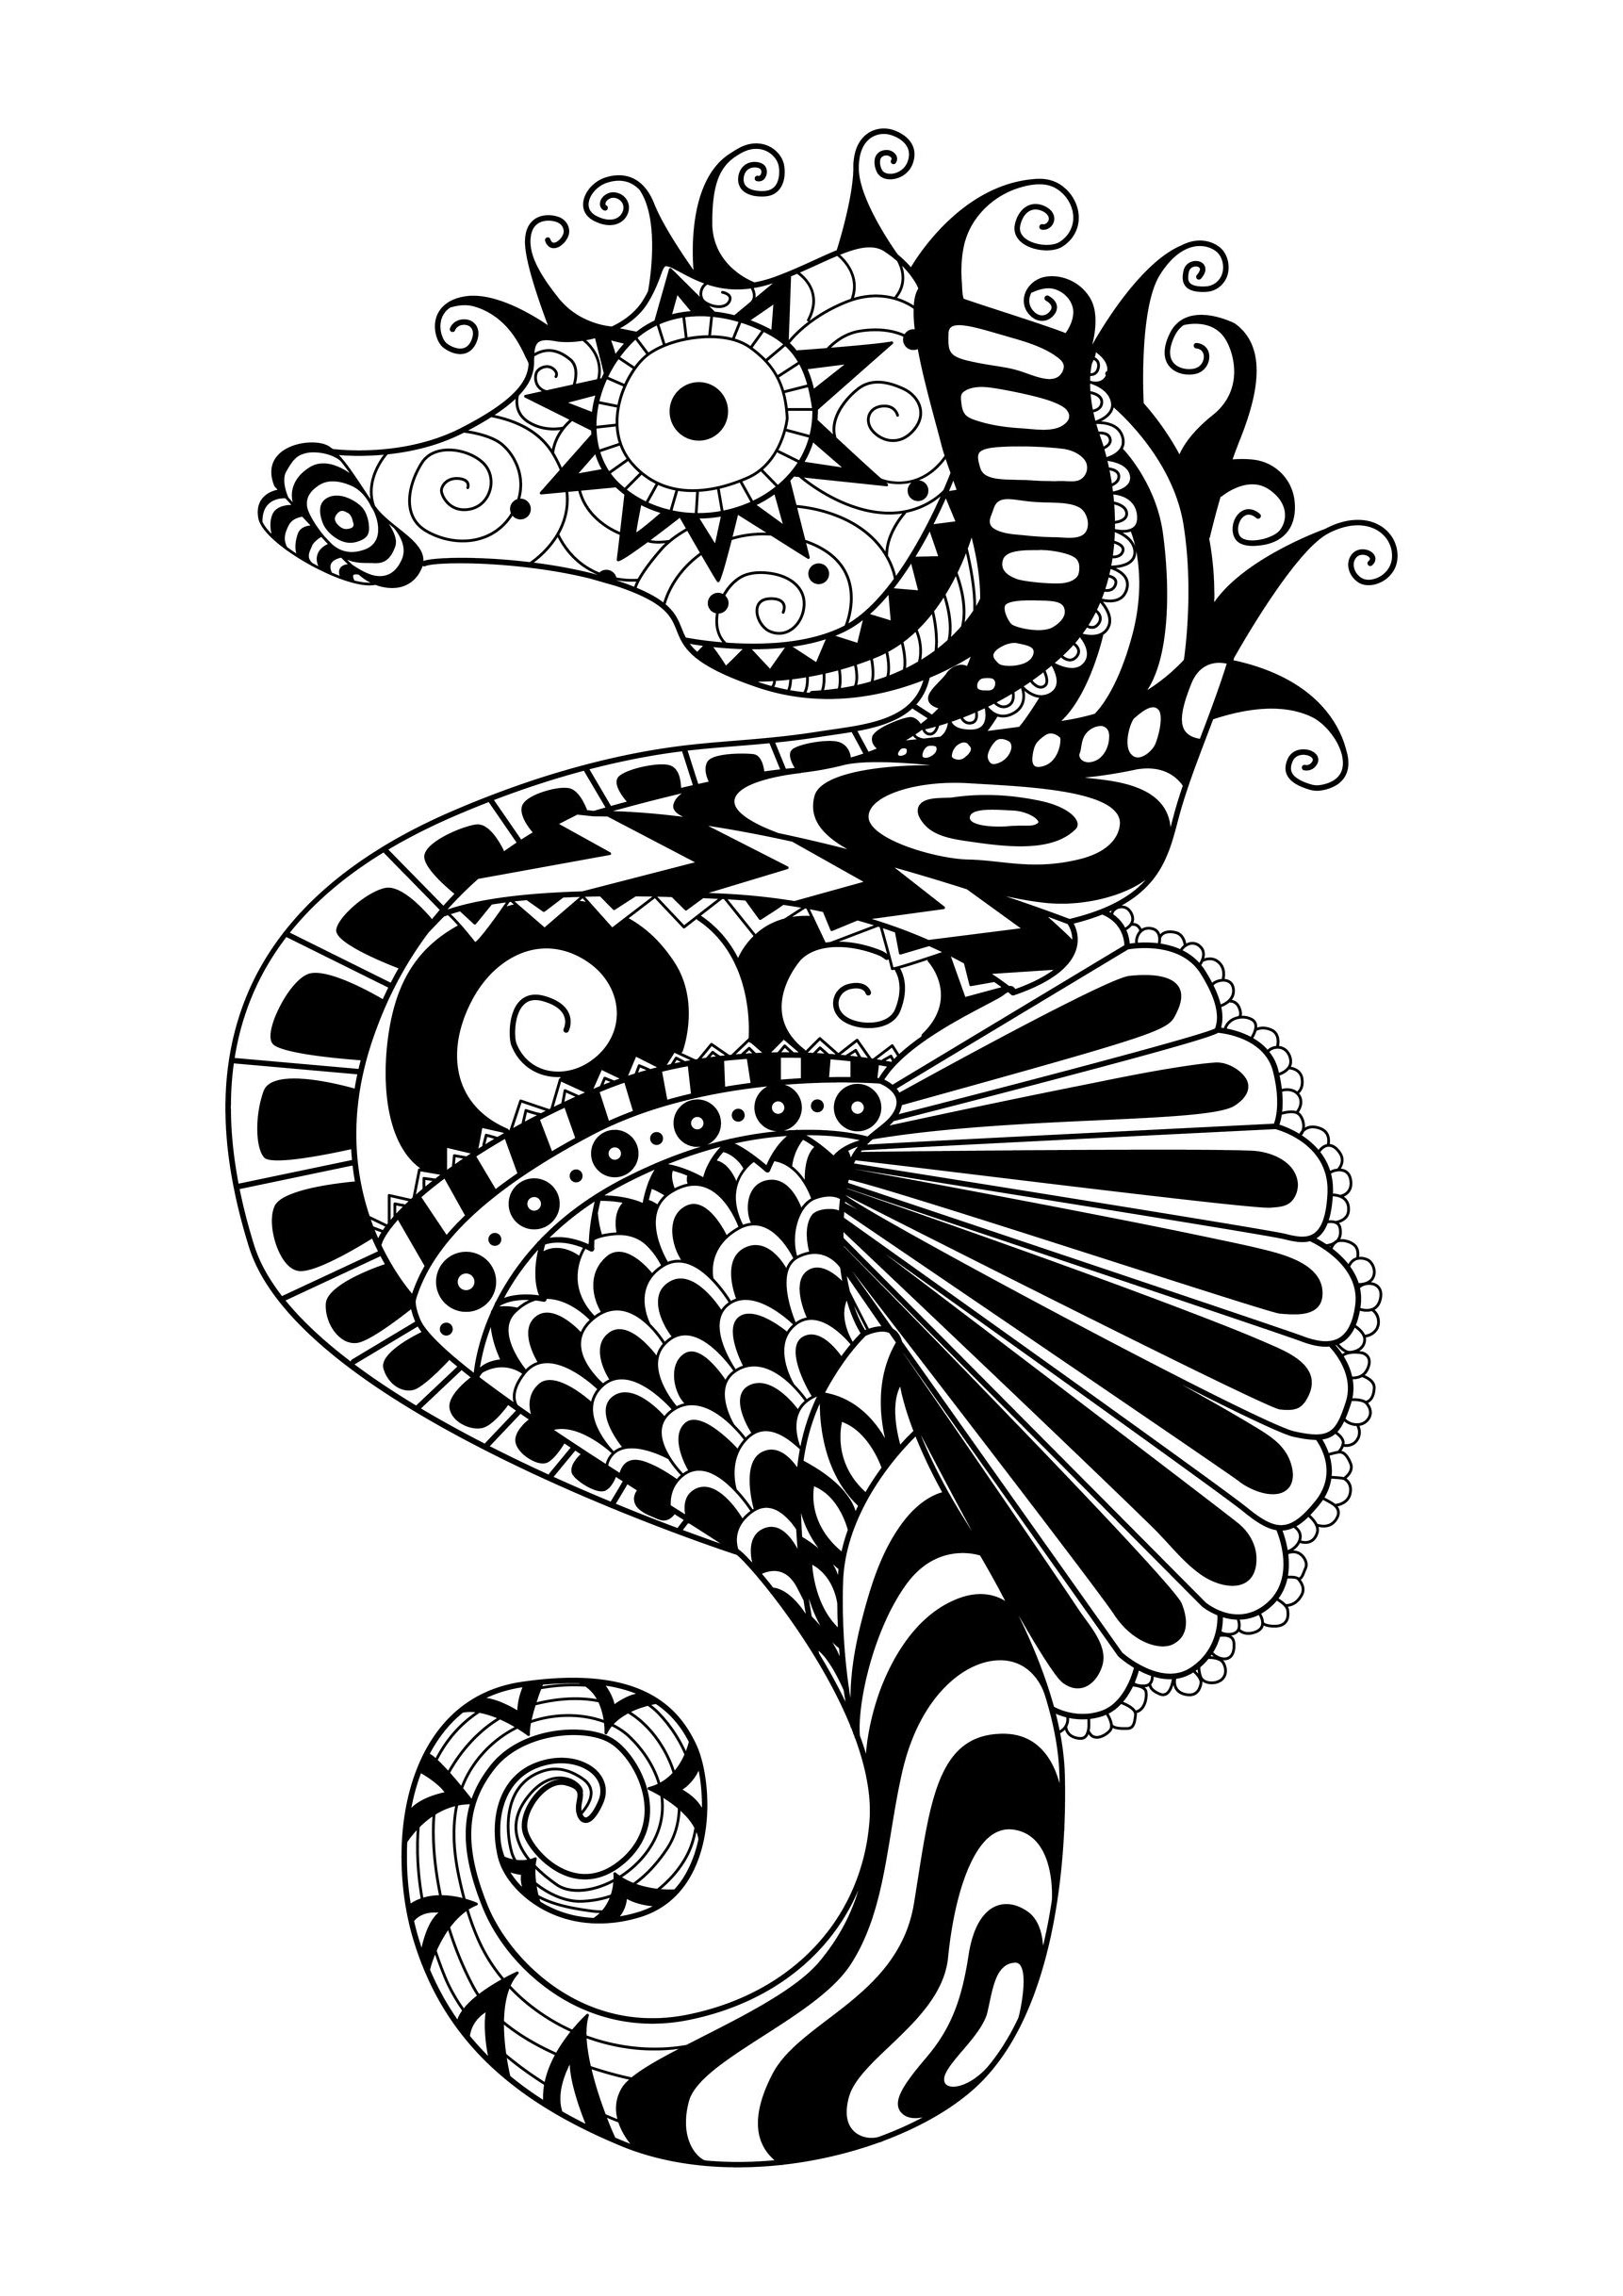 Un hyppocampe dessiné avec des motifs Zentangle simples, par Bimdeedee, Artiste : Bimdeedee   Source : 123rf